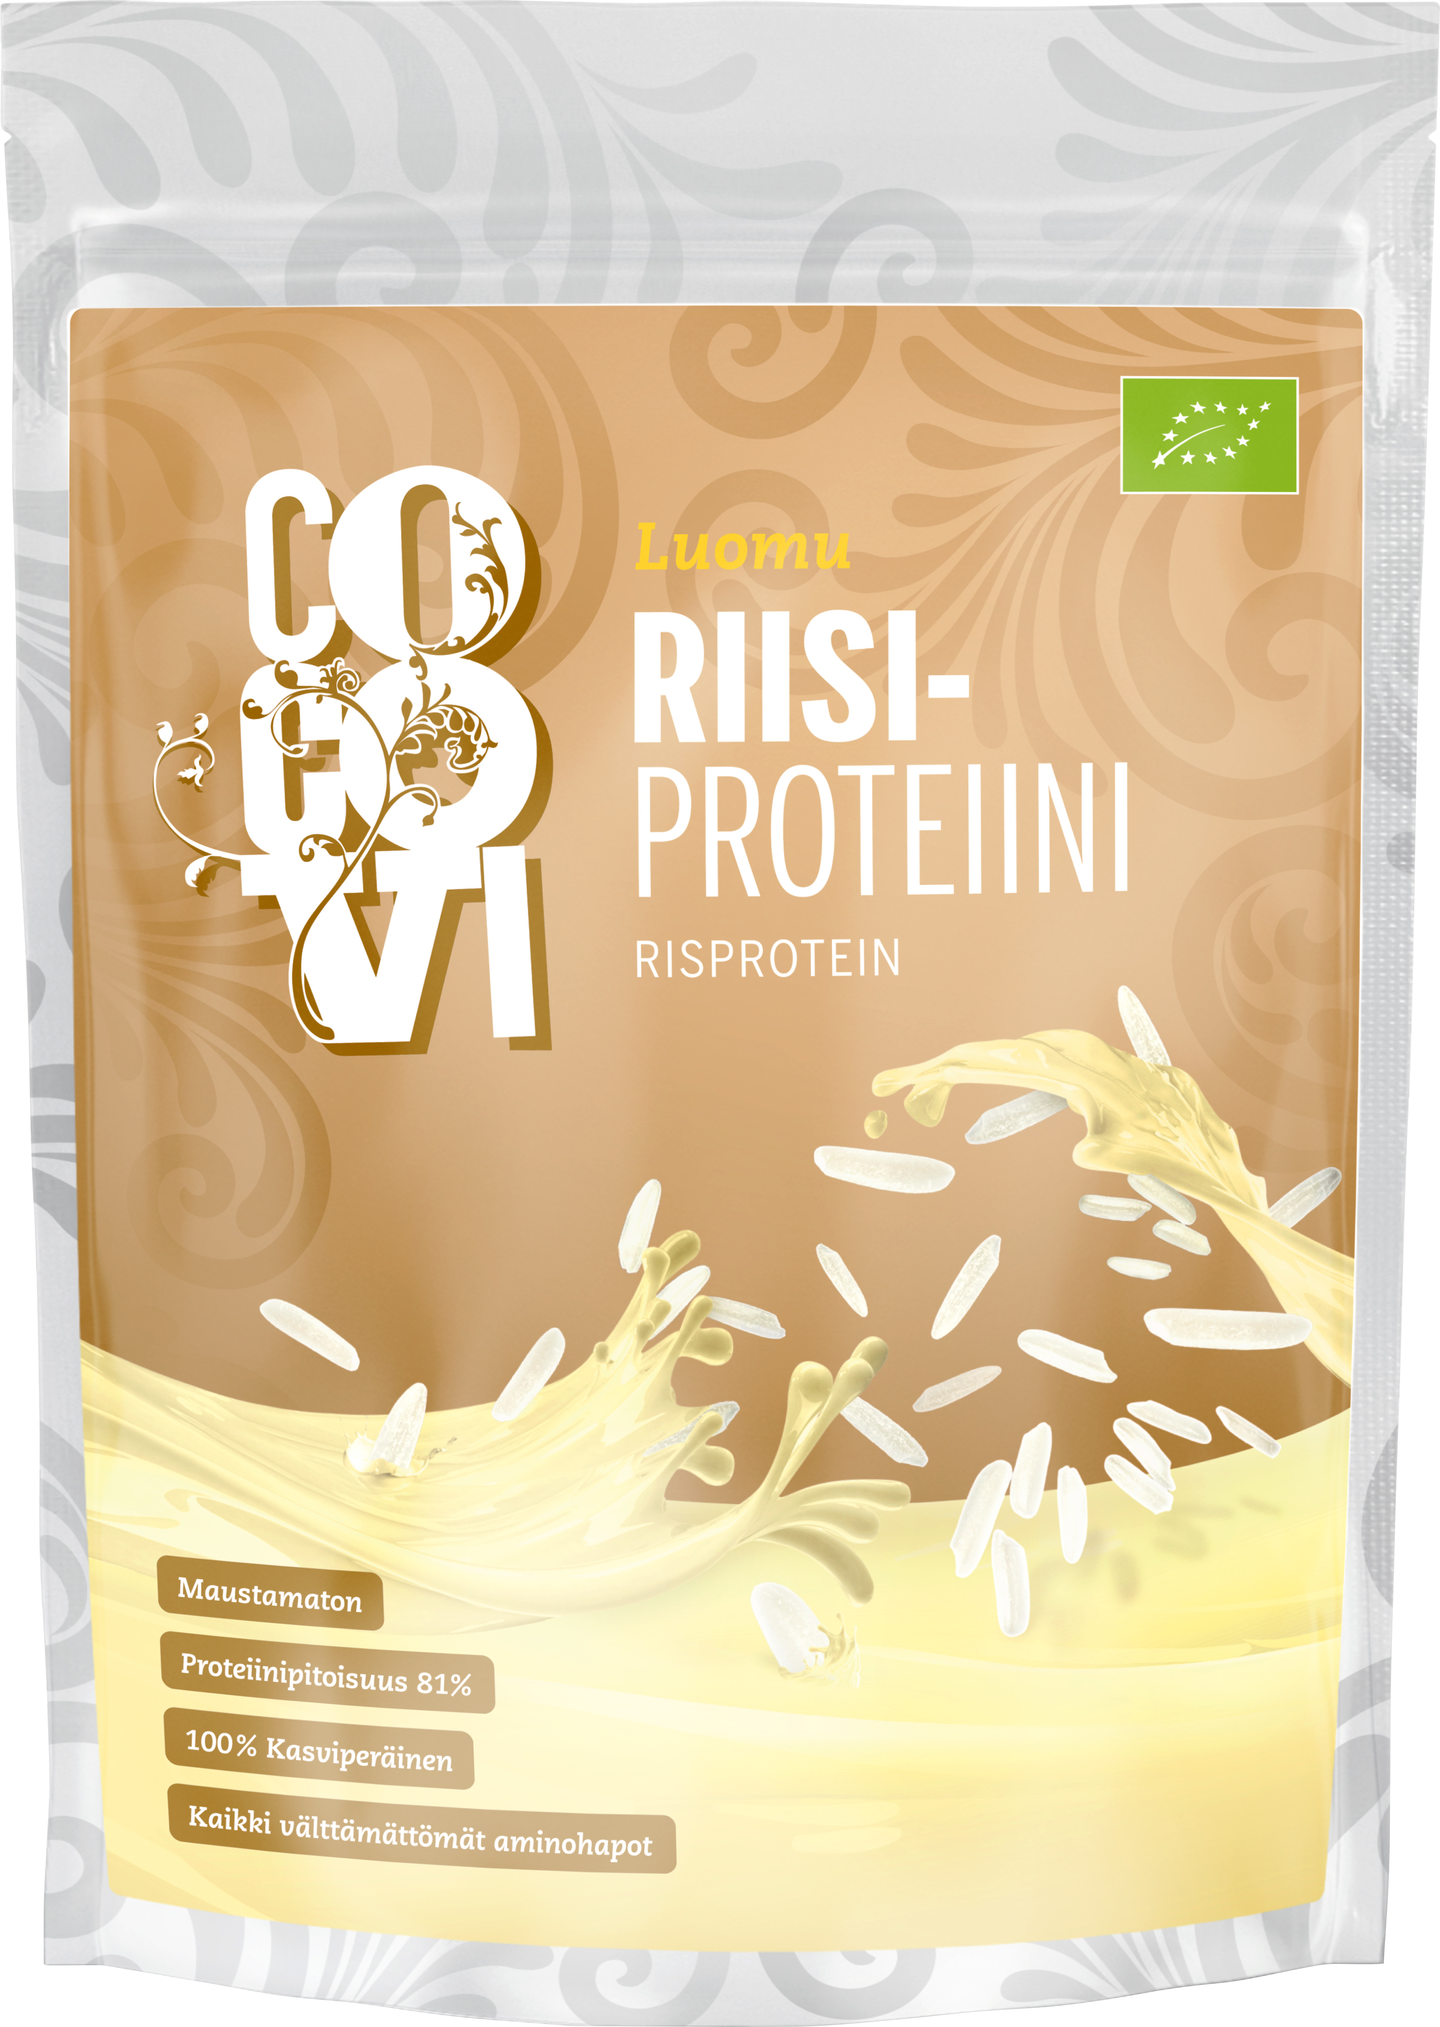 Cocovi Riisiproteiini 500g luomu | K-Ruoka Verkkokauppa